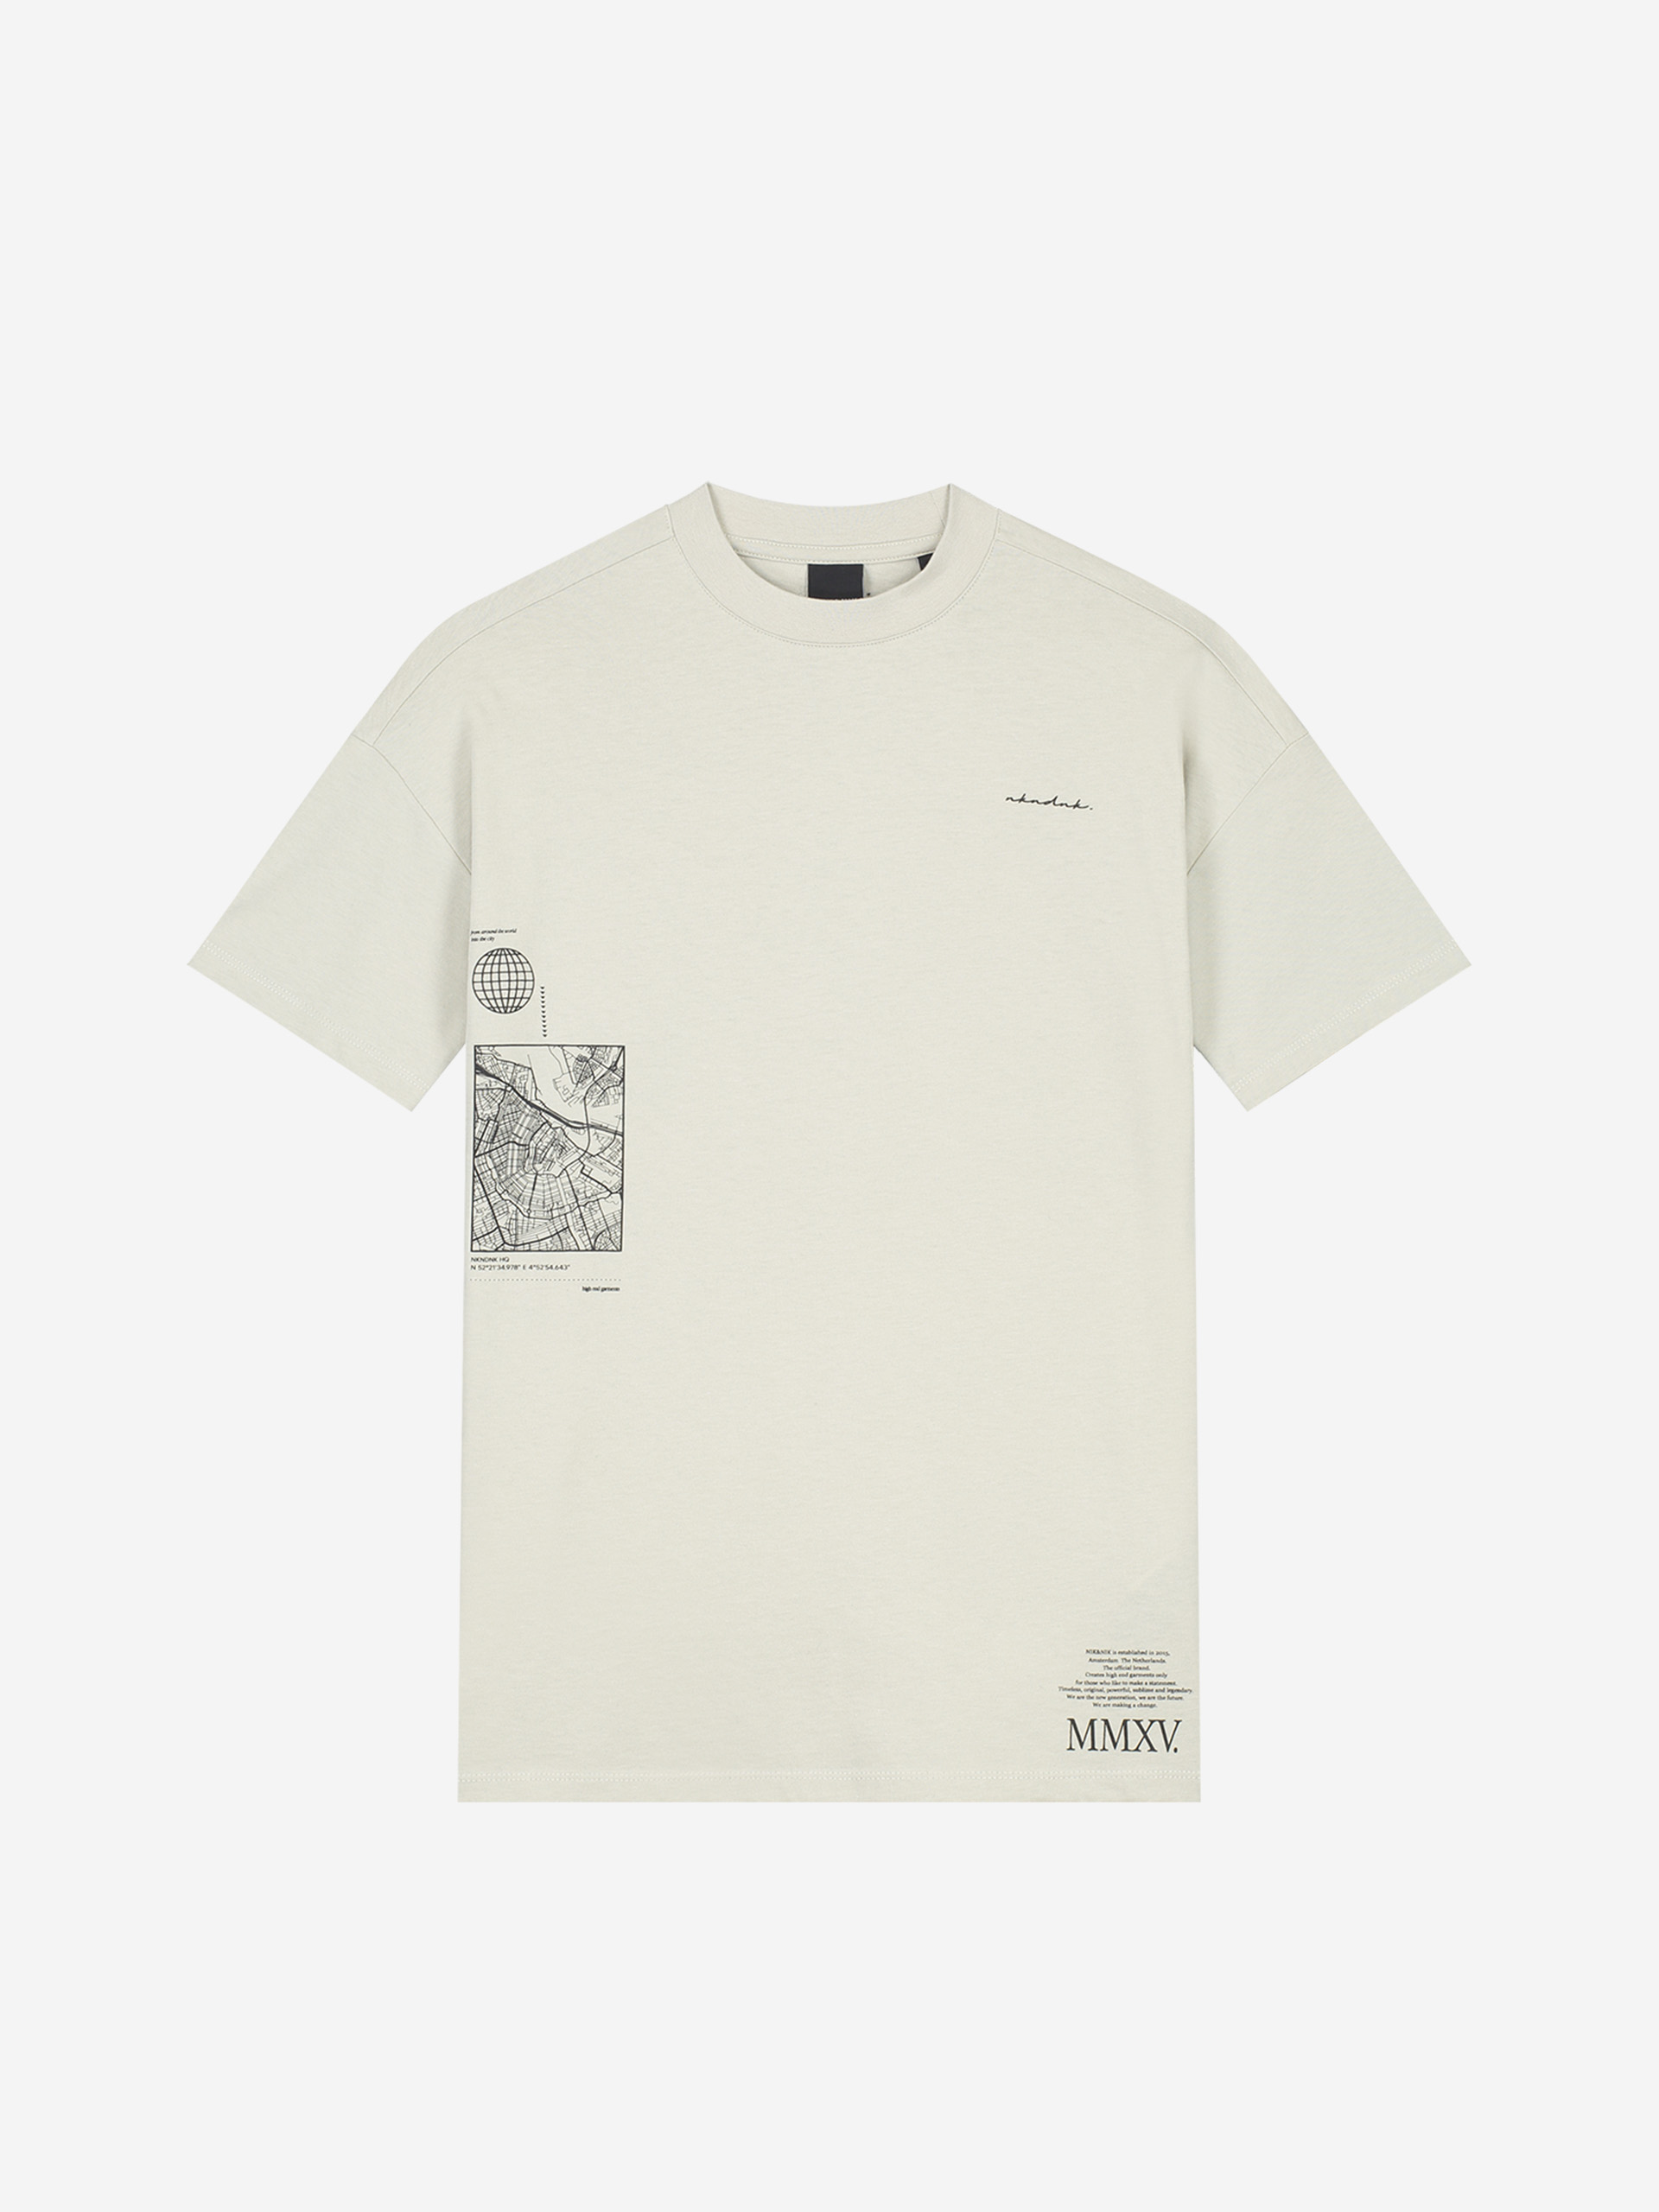 NKNDK City t-shirt